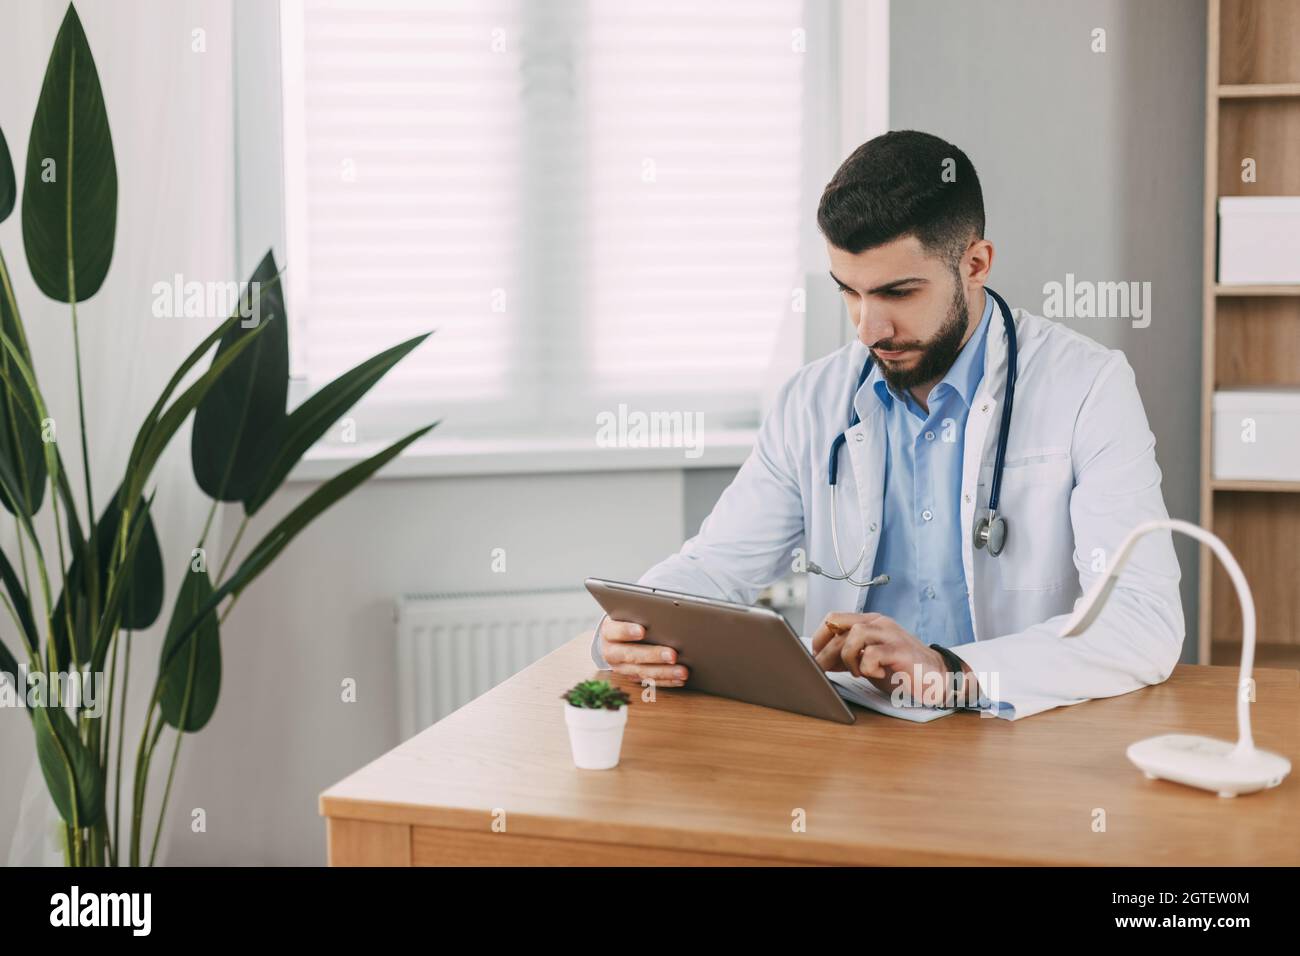 Un Doctor Masculino de Apariencia Oriental está Concentratedly trabajando en una Tableta, sentado en una Mesa Foto de stock